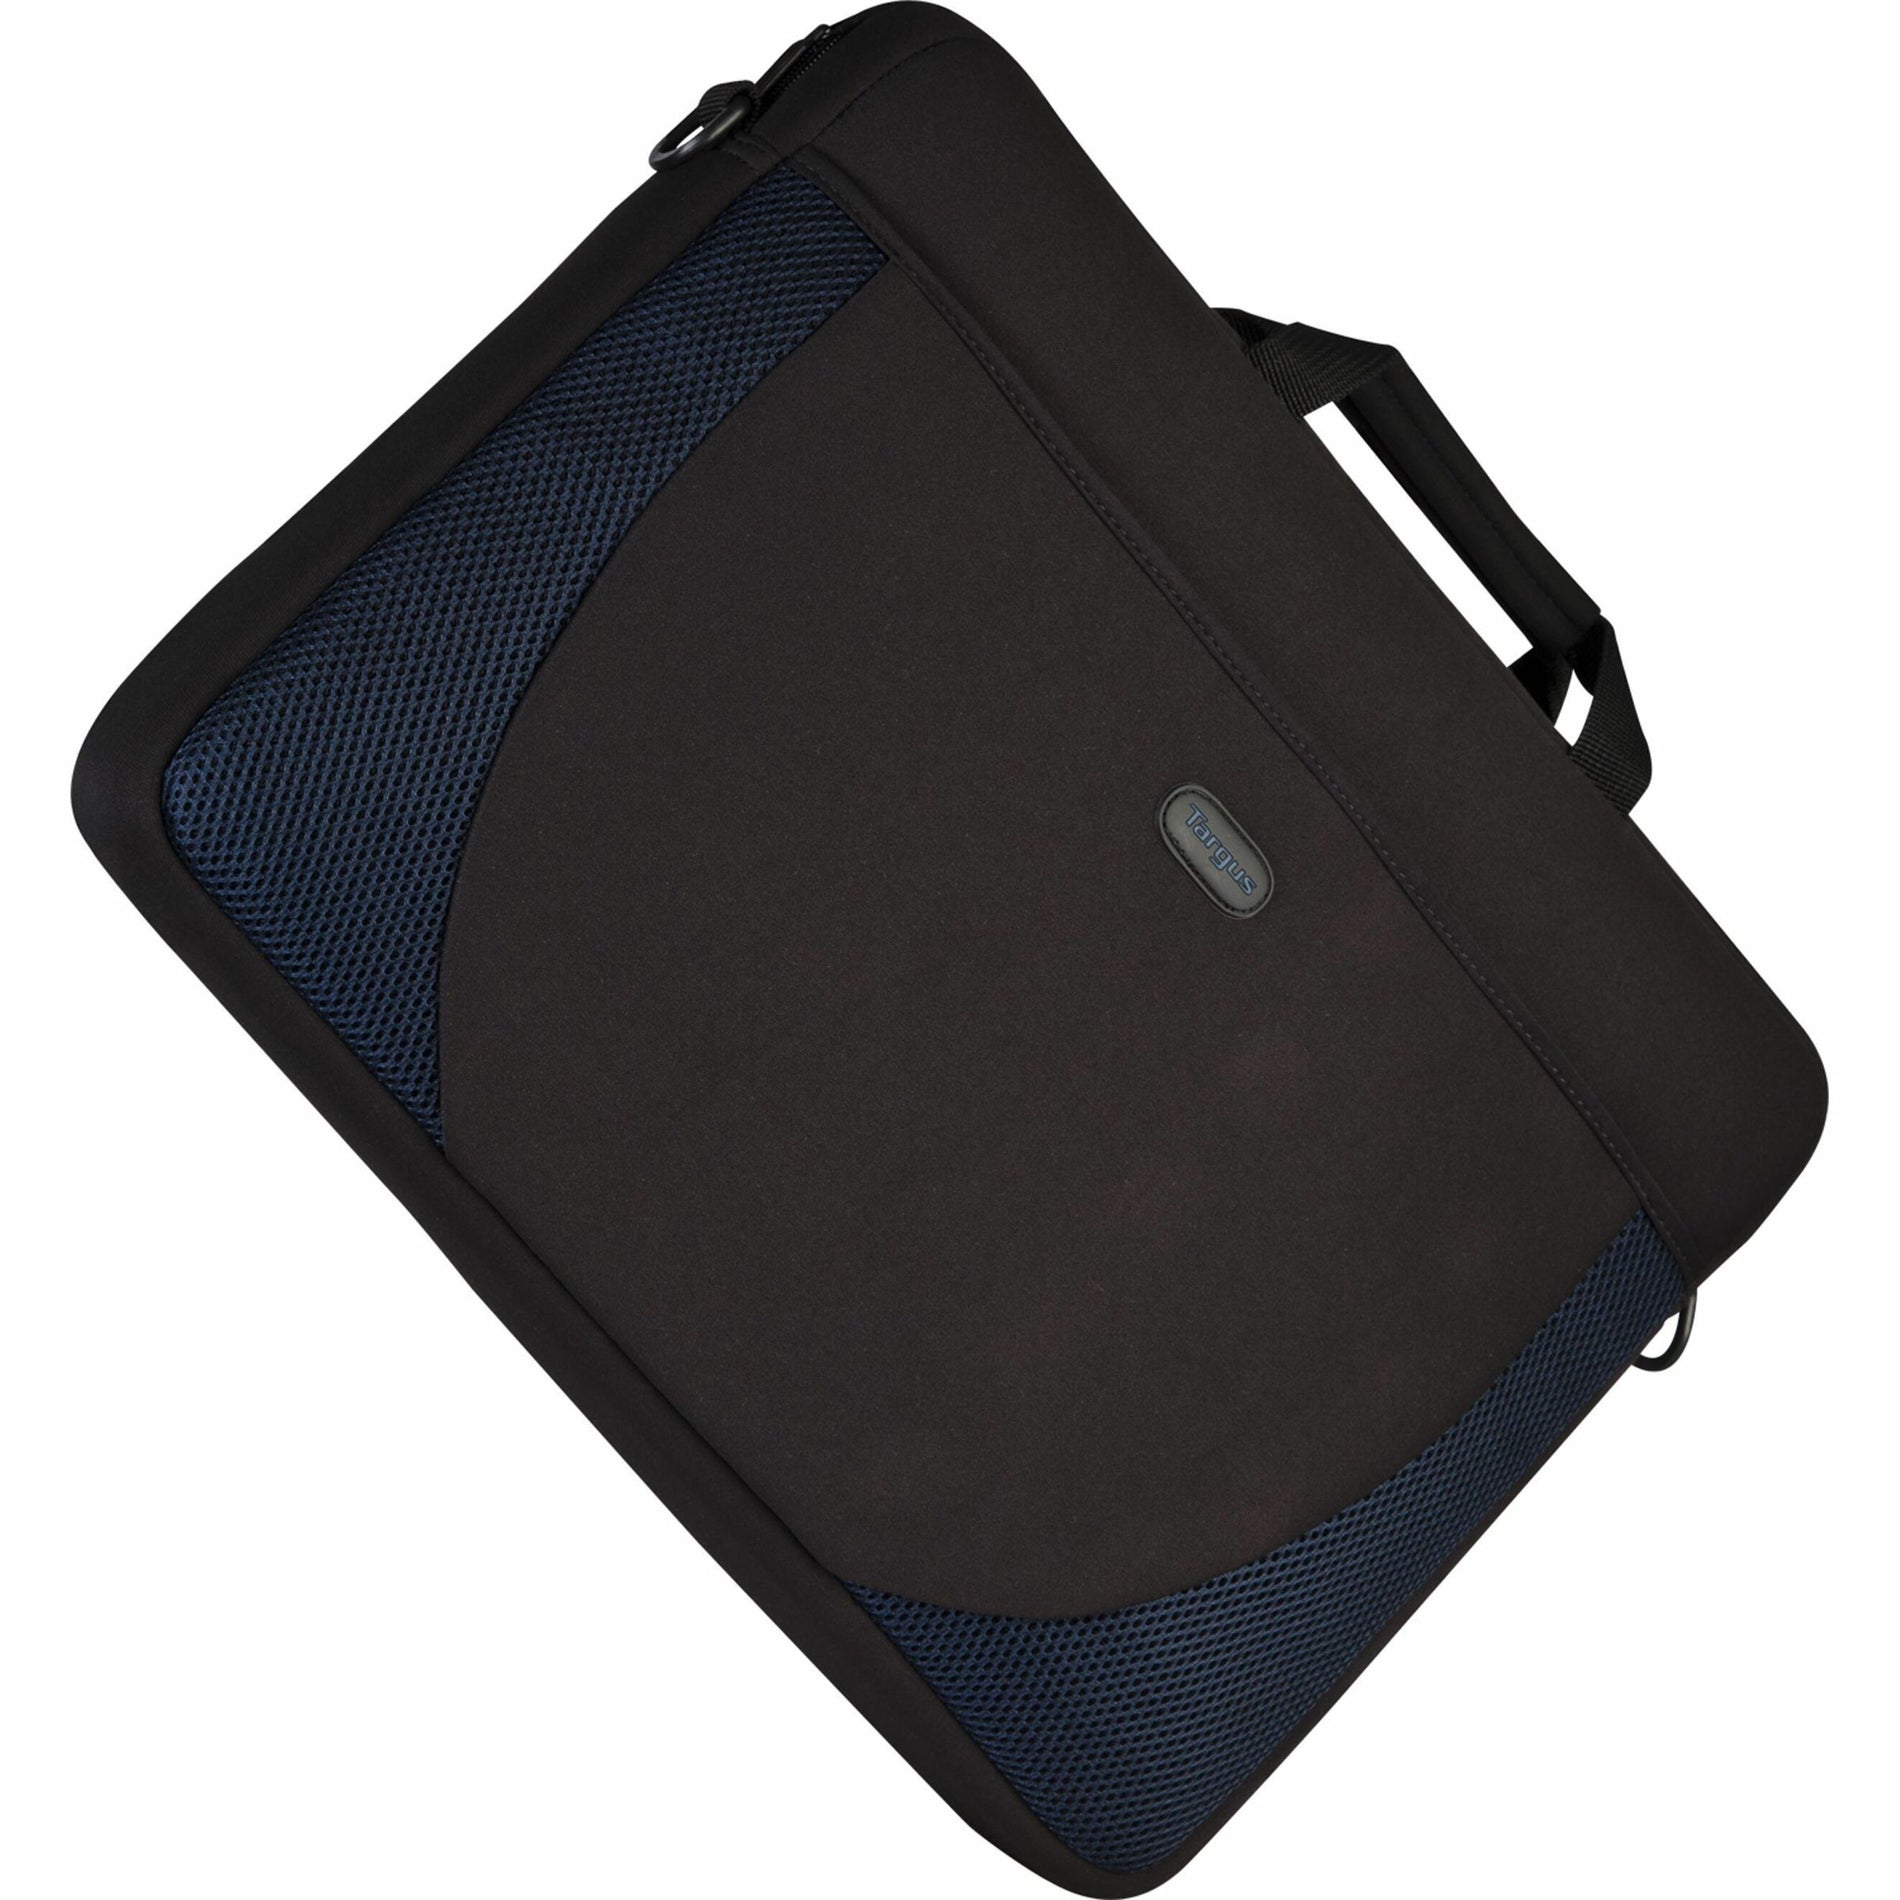 Targus CVR217 17" Slipcase, Black/Blue Notebook Case